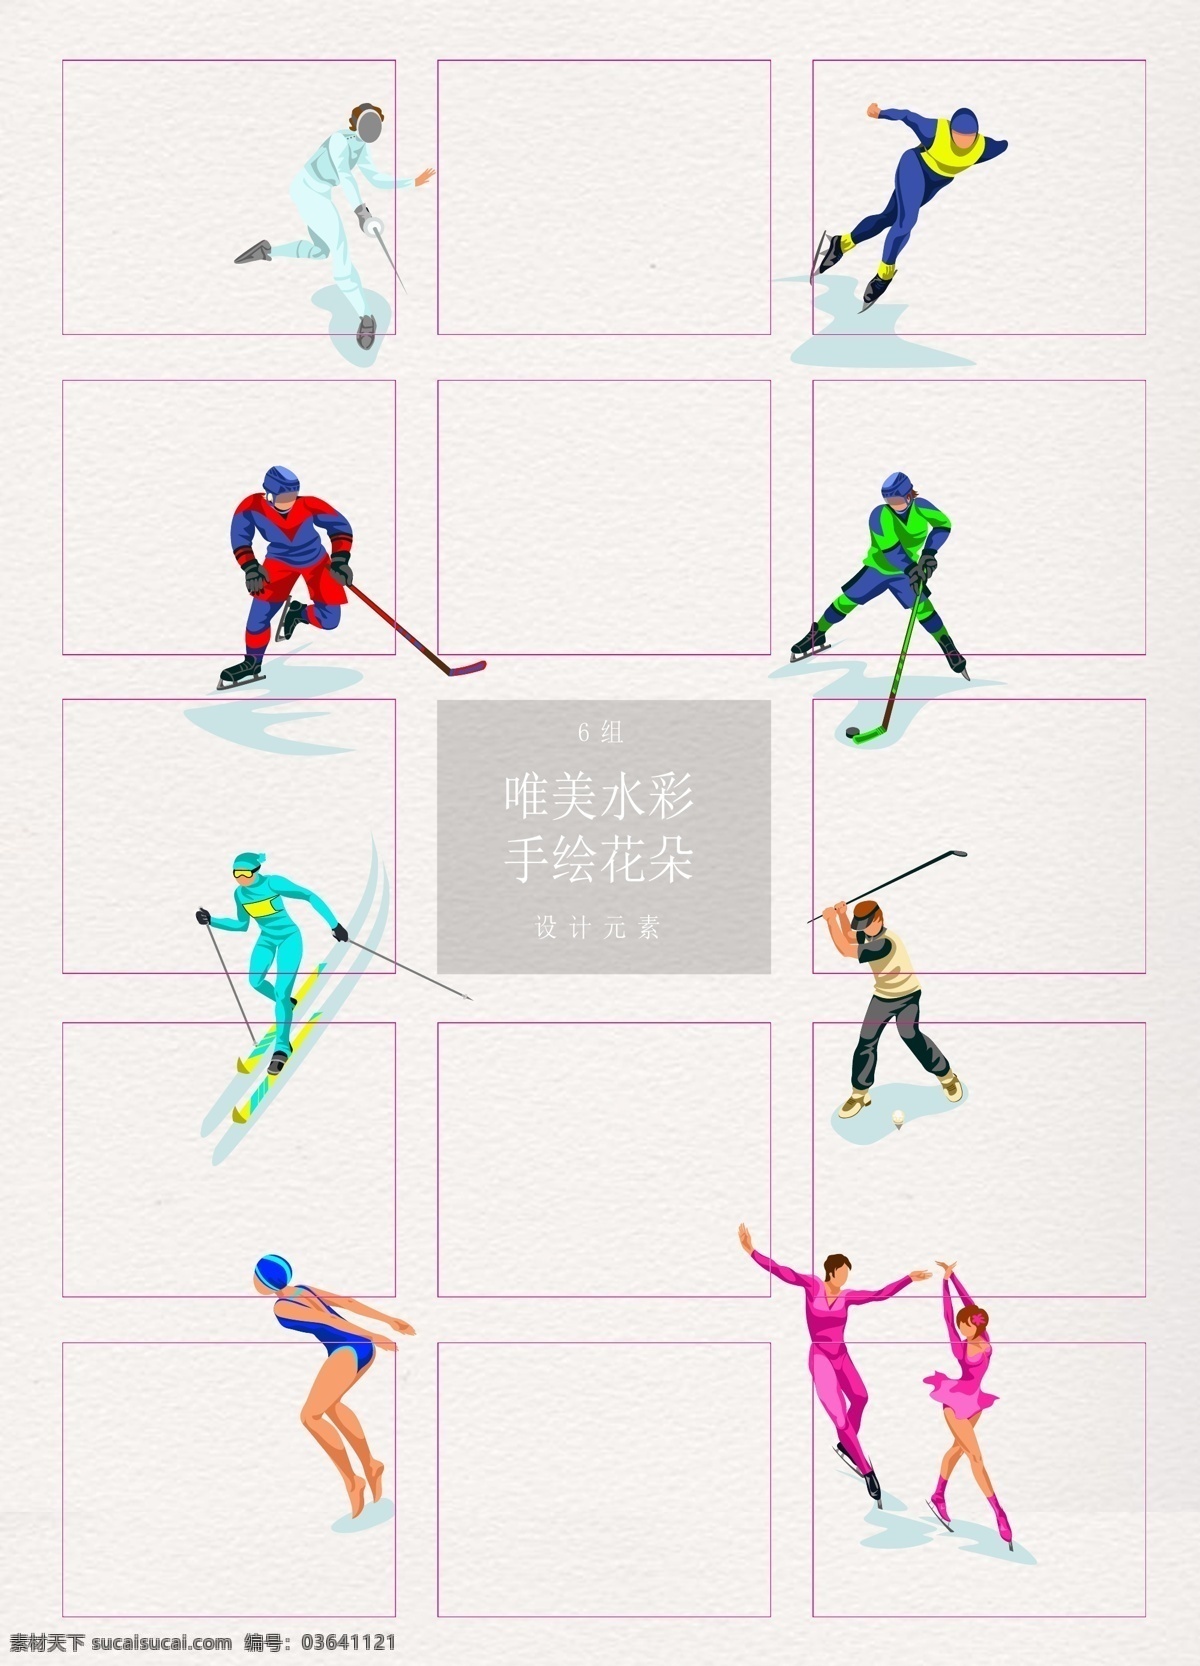 卡通 矢量 冬季 奥运会 运动员 矢量图 人物 体育运动 滑冰 冰球运动员 滑雪运动 花样滑冰